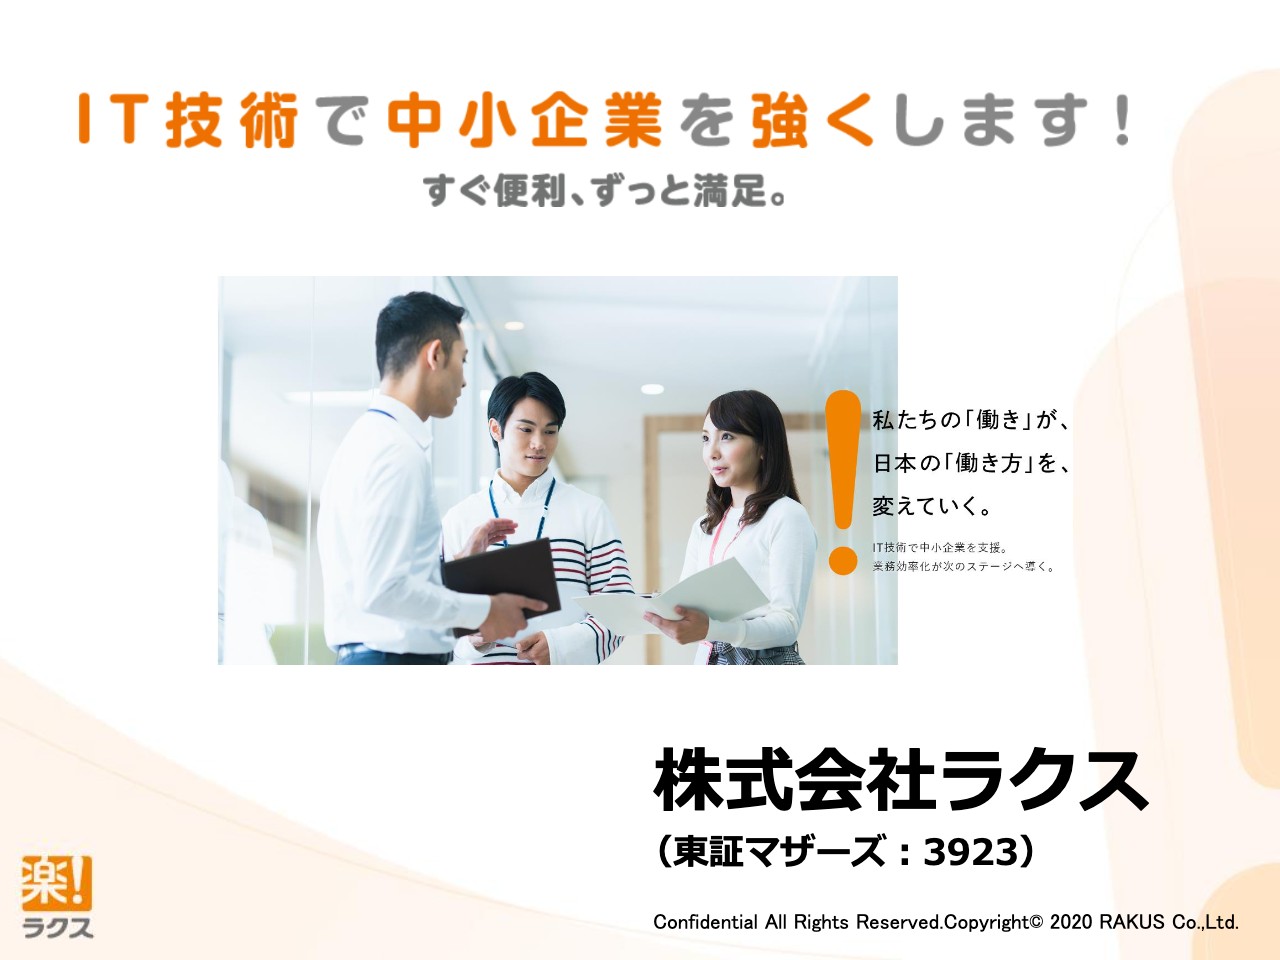 ラクス 株式 会社 【PO】ラクス （3923）が株式売出しと東証1部への昇格を発表！